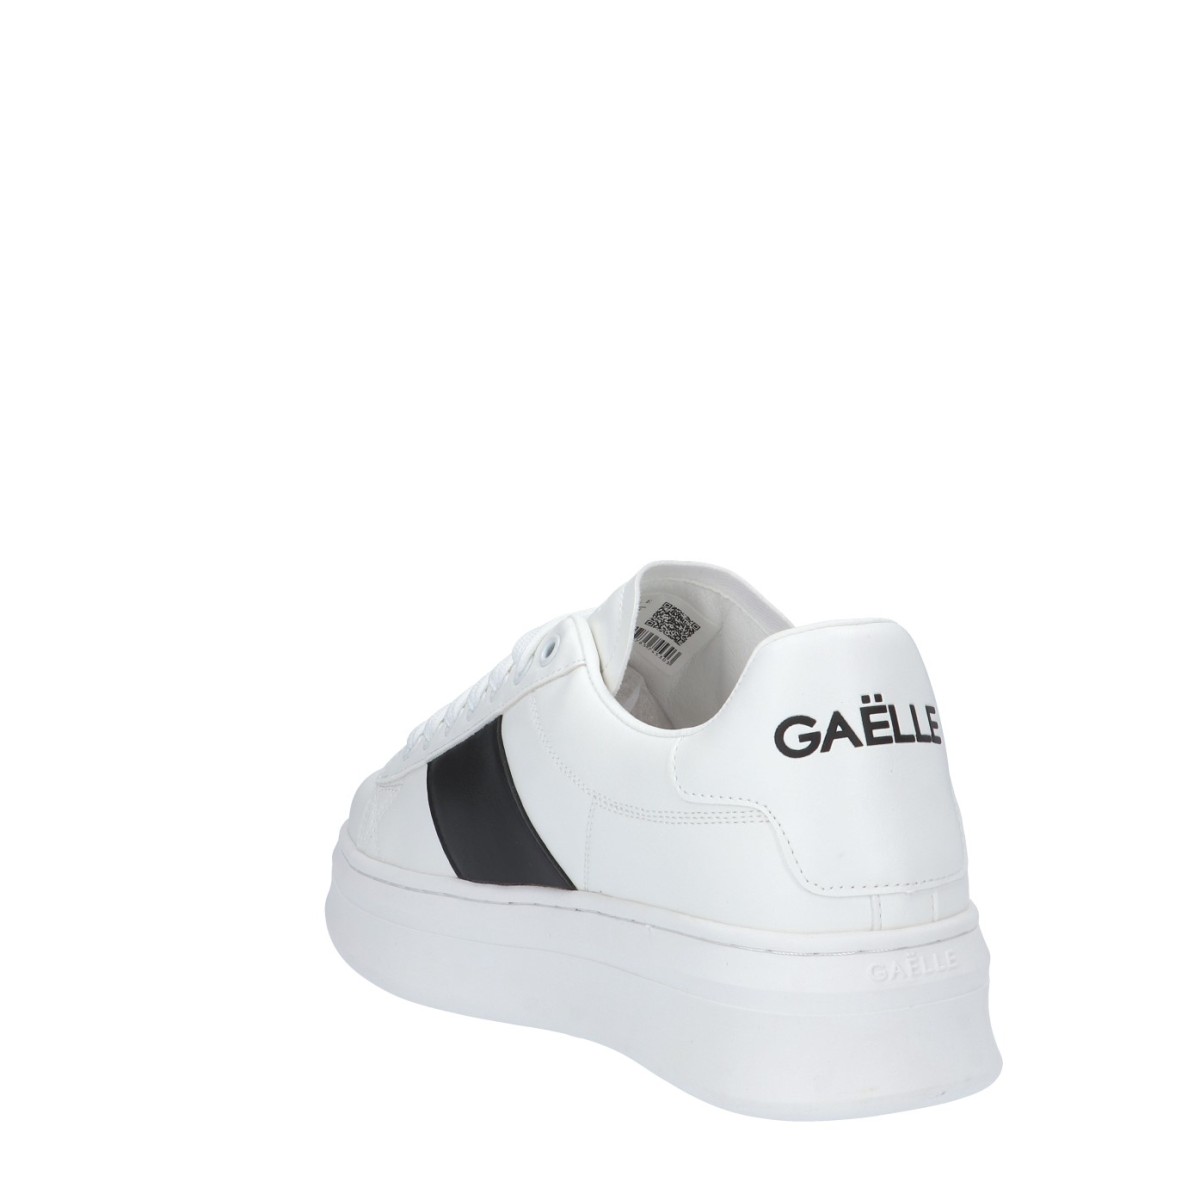 Gaelle Sneaker Bianco/nero Gomma GBCUP716